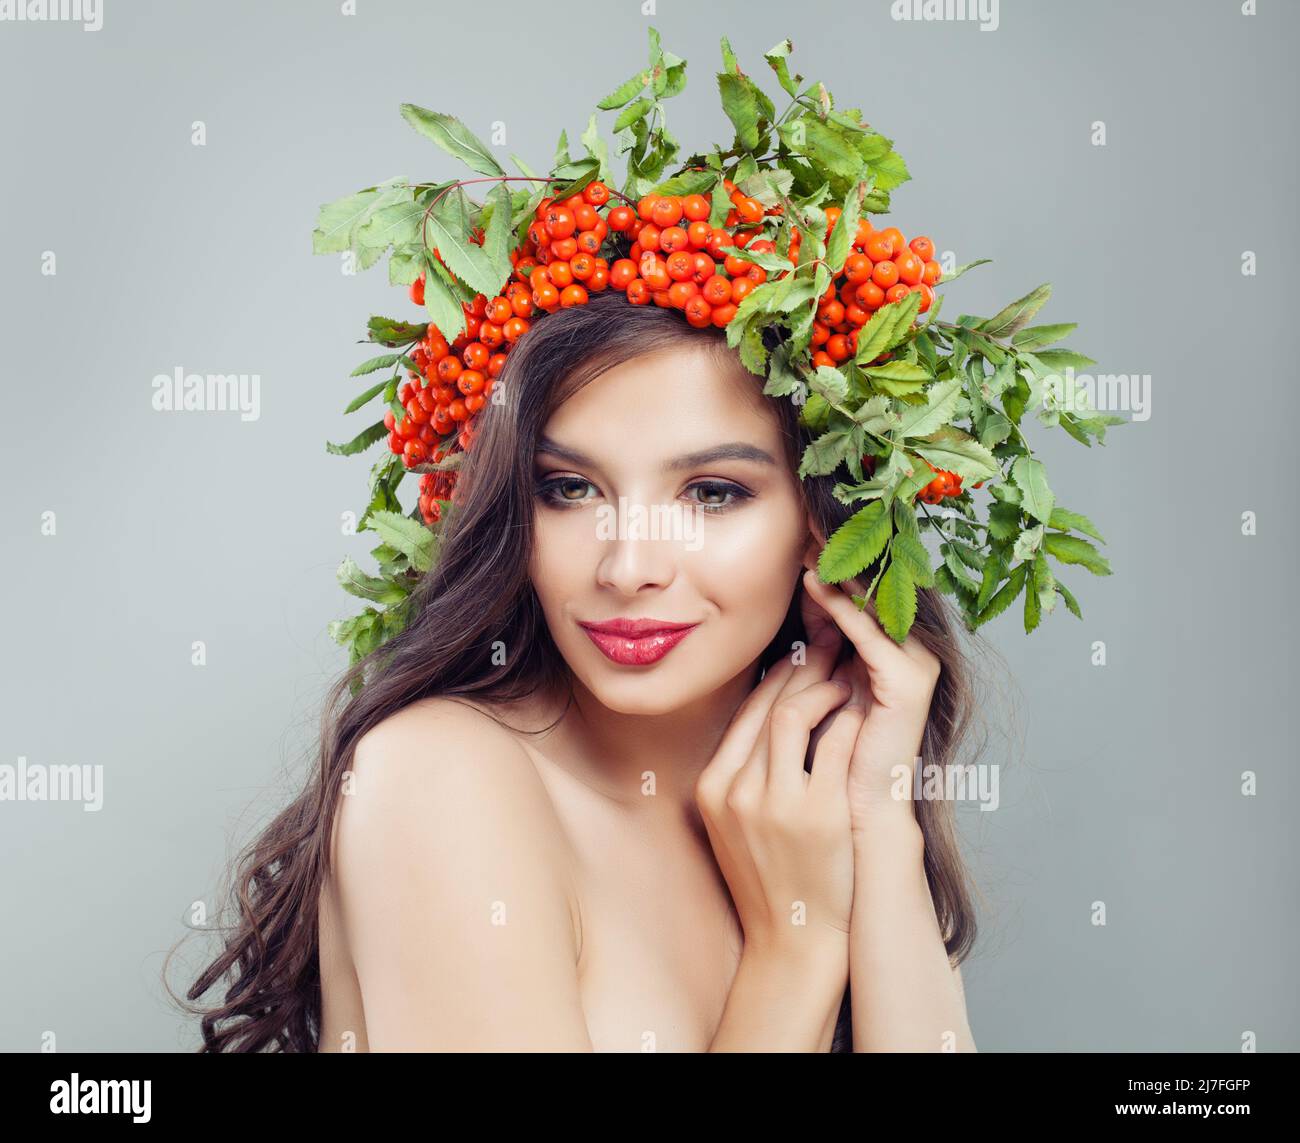 Schöne Frau mit Make-up, dunklem lockiges Haar und rovan-Beeren im Haar Stockfoto